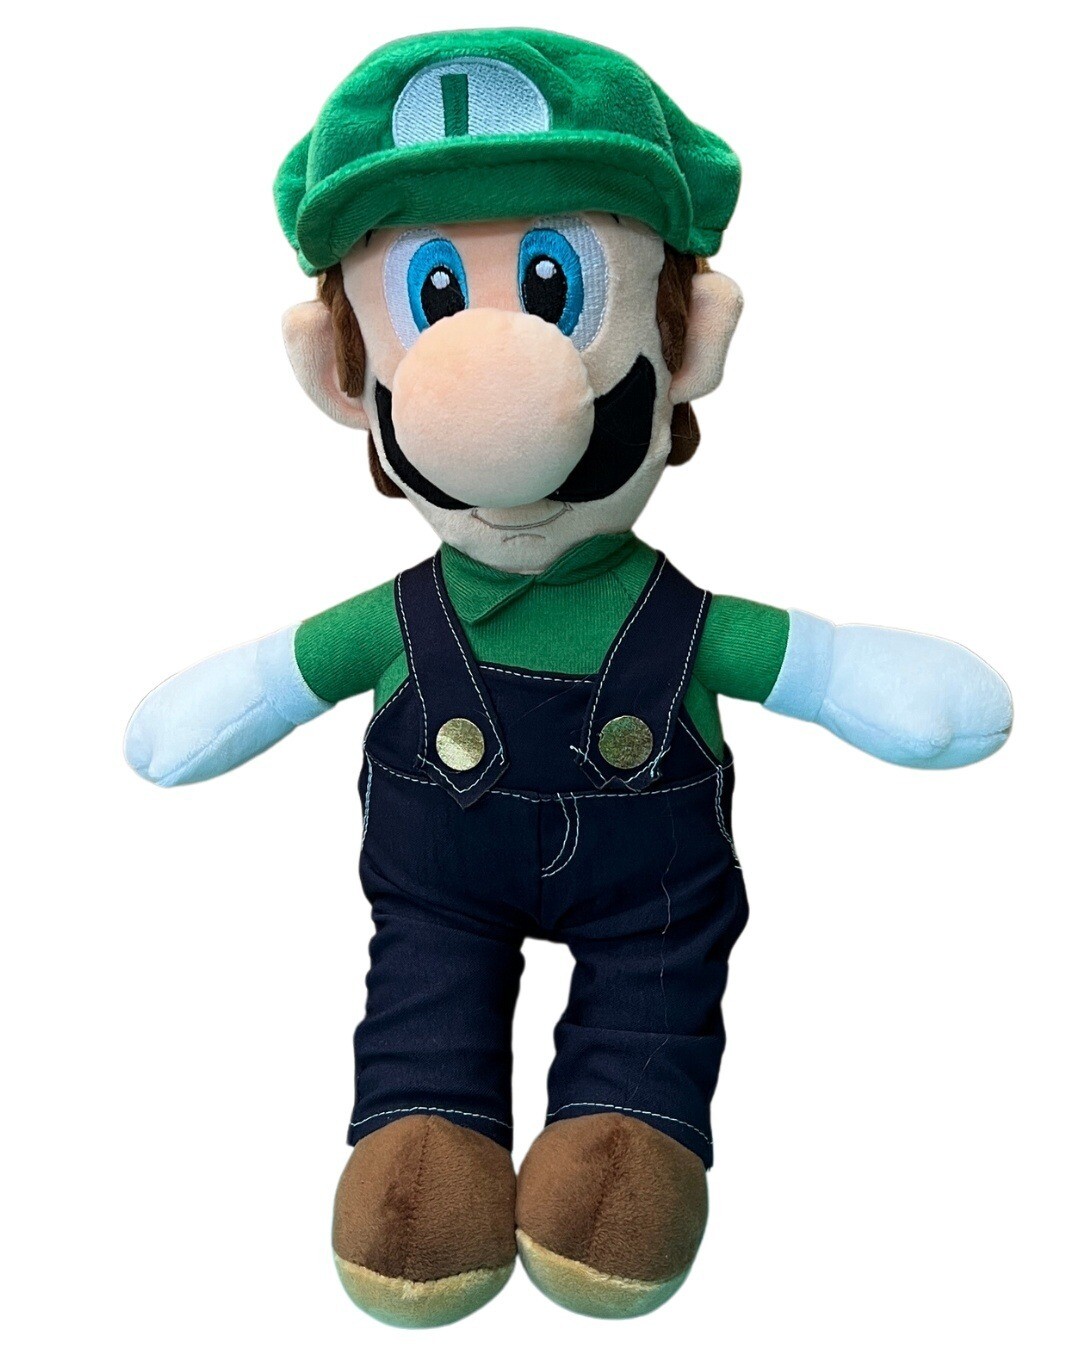 Peluche de Luigi- Colección Super Mario Bros